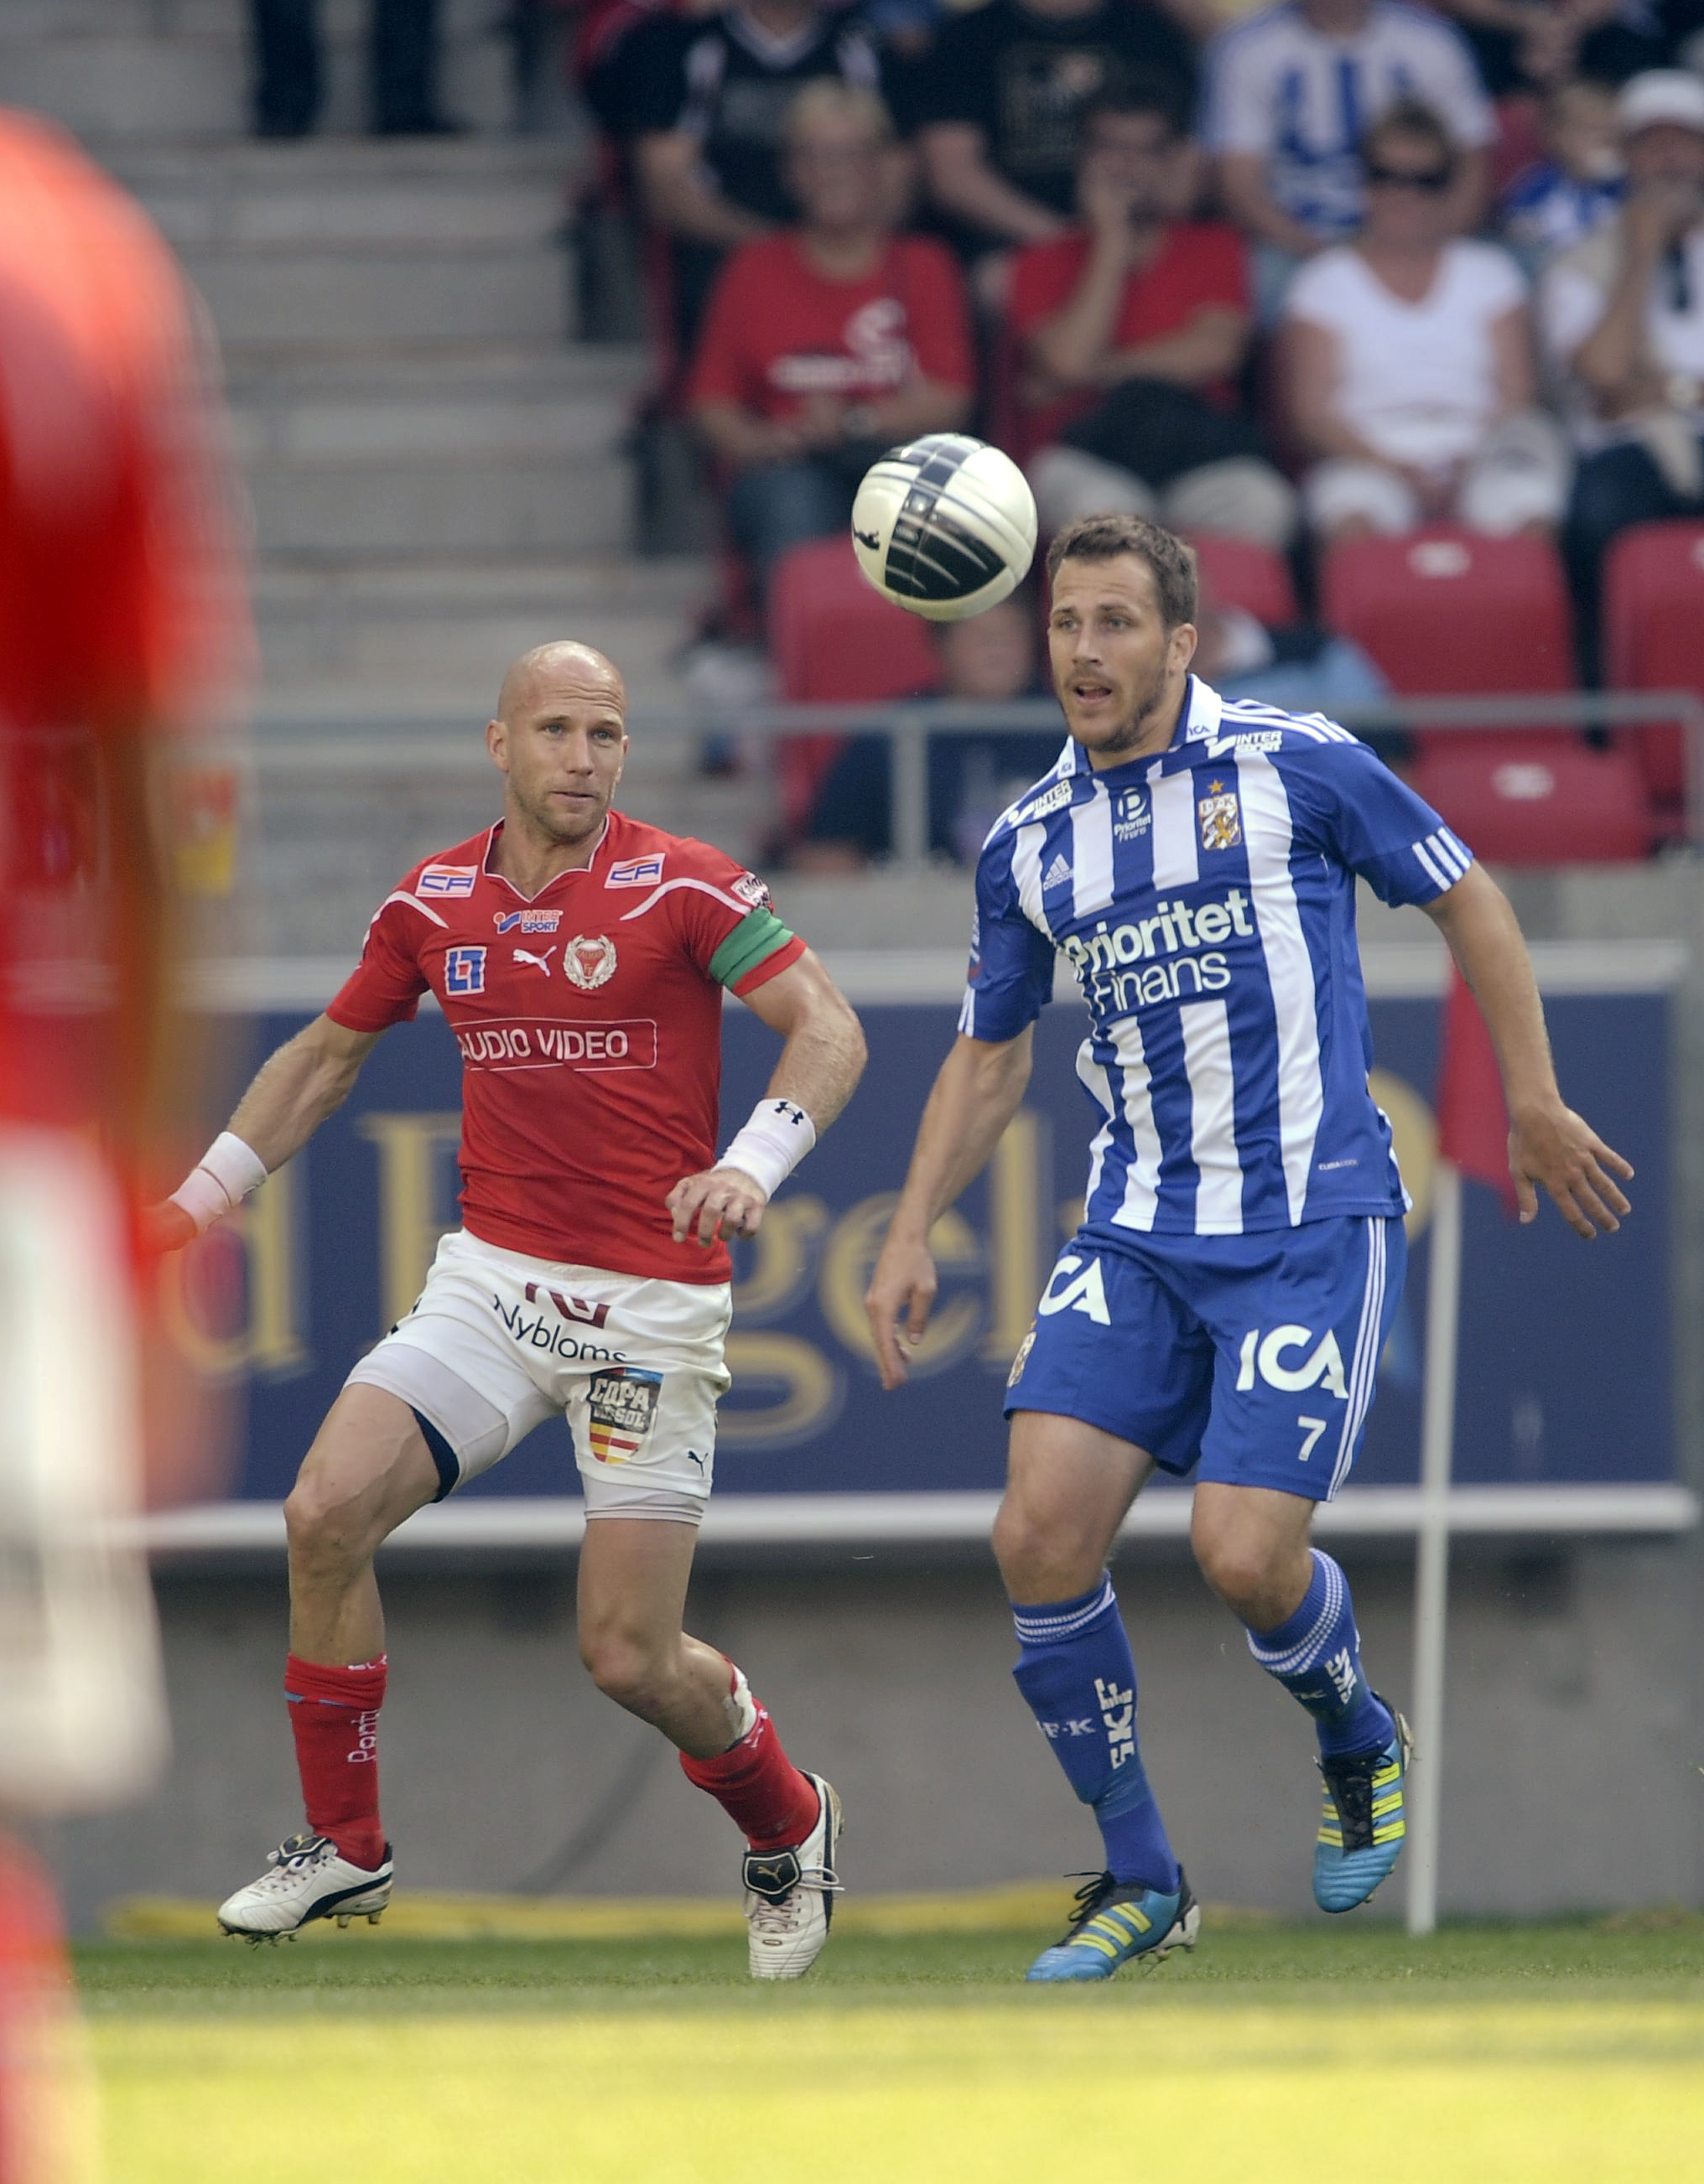 ifk goteborg, Allsvenskan, Henrik Rydström, Kalmar FF, Ricardo Santos, Nollade